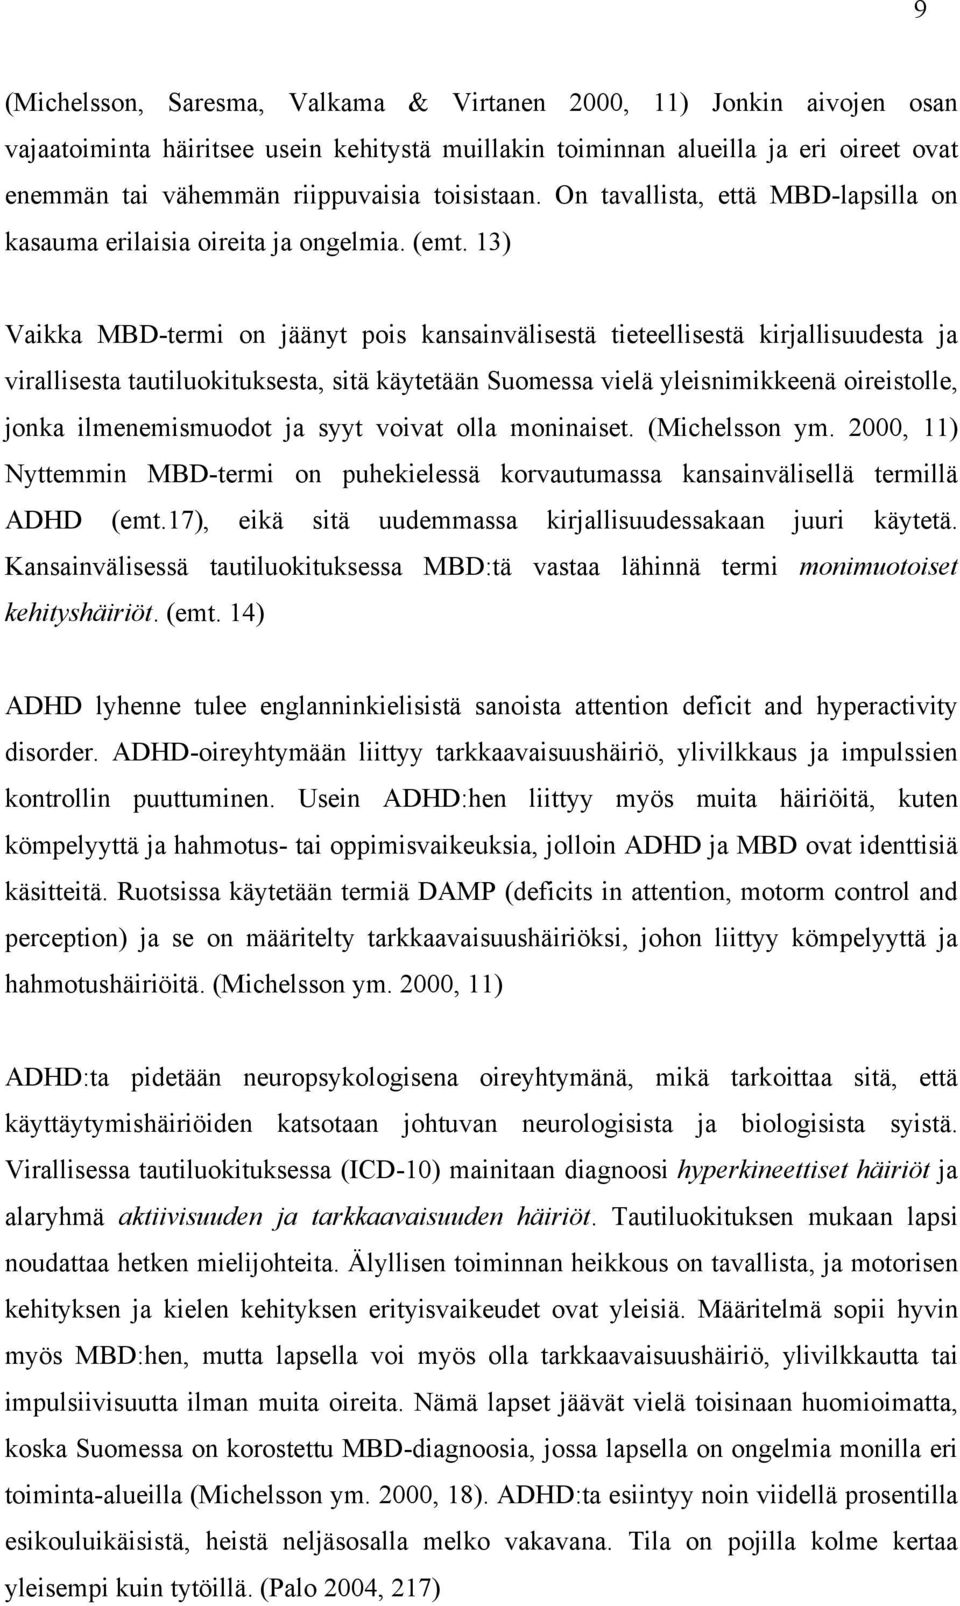 13) Vaikka MBD-termi on jäänyt pois kansainvälisestä tieteellisestä kirjallisuudesta ja virallisesta tautiluokituksesta, sitä käytetään Suomessa vielä yleisnimikkeenä oireistolle, jonka